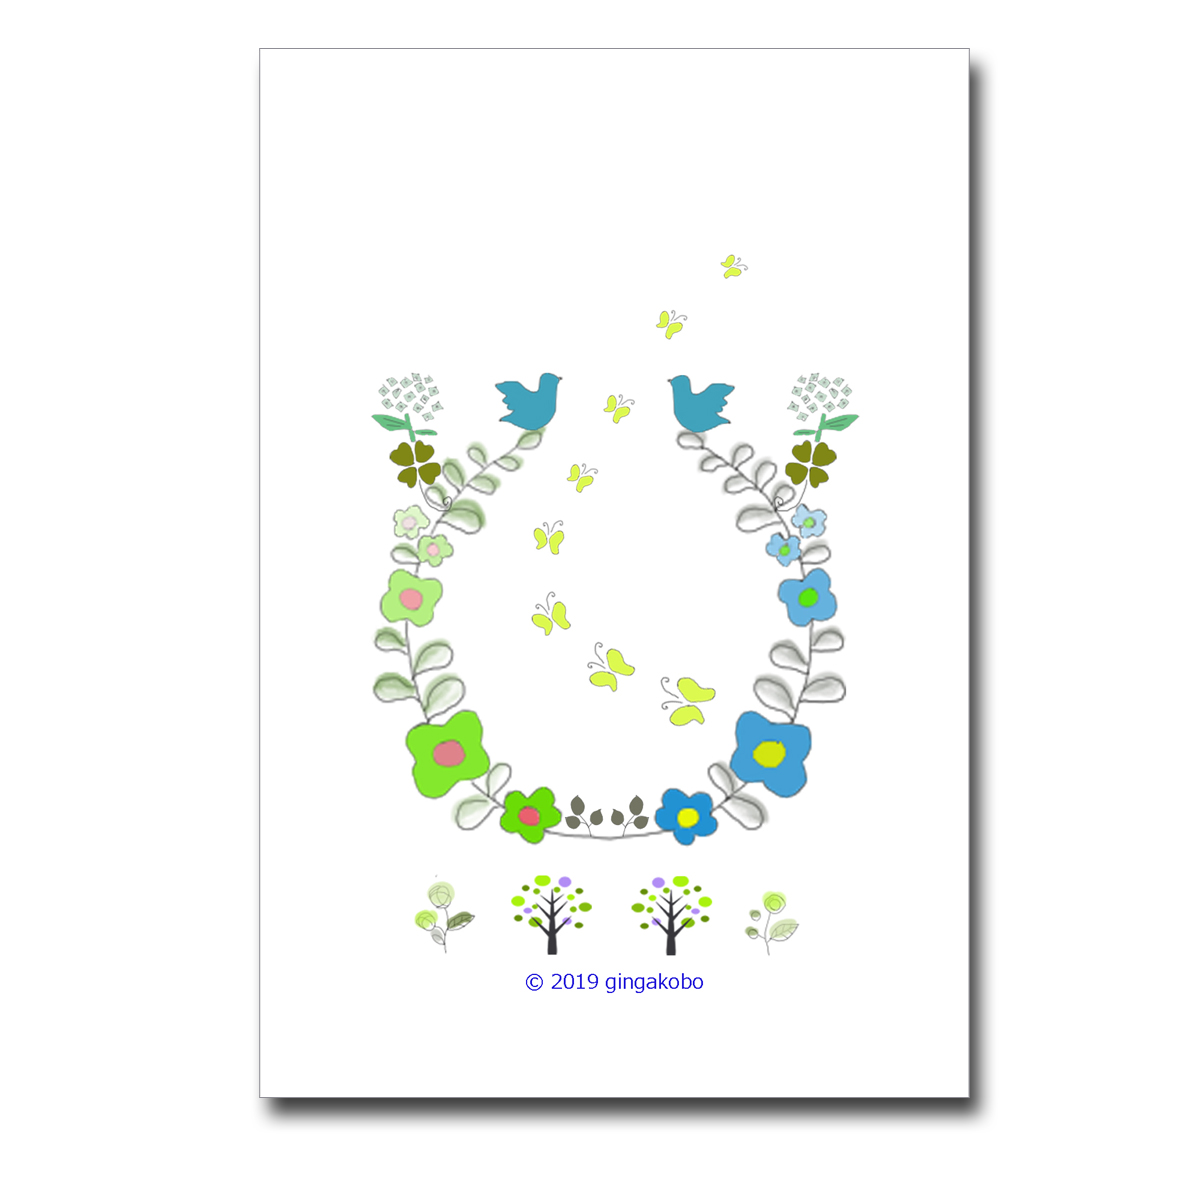 幸せの青い鳥と四つ葉のクローバー ほっこり癒しのイラストポスト